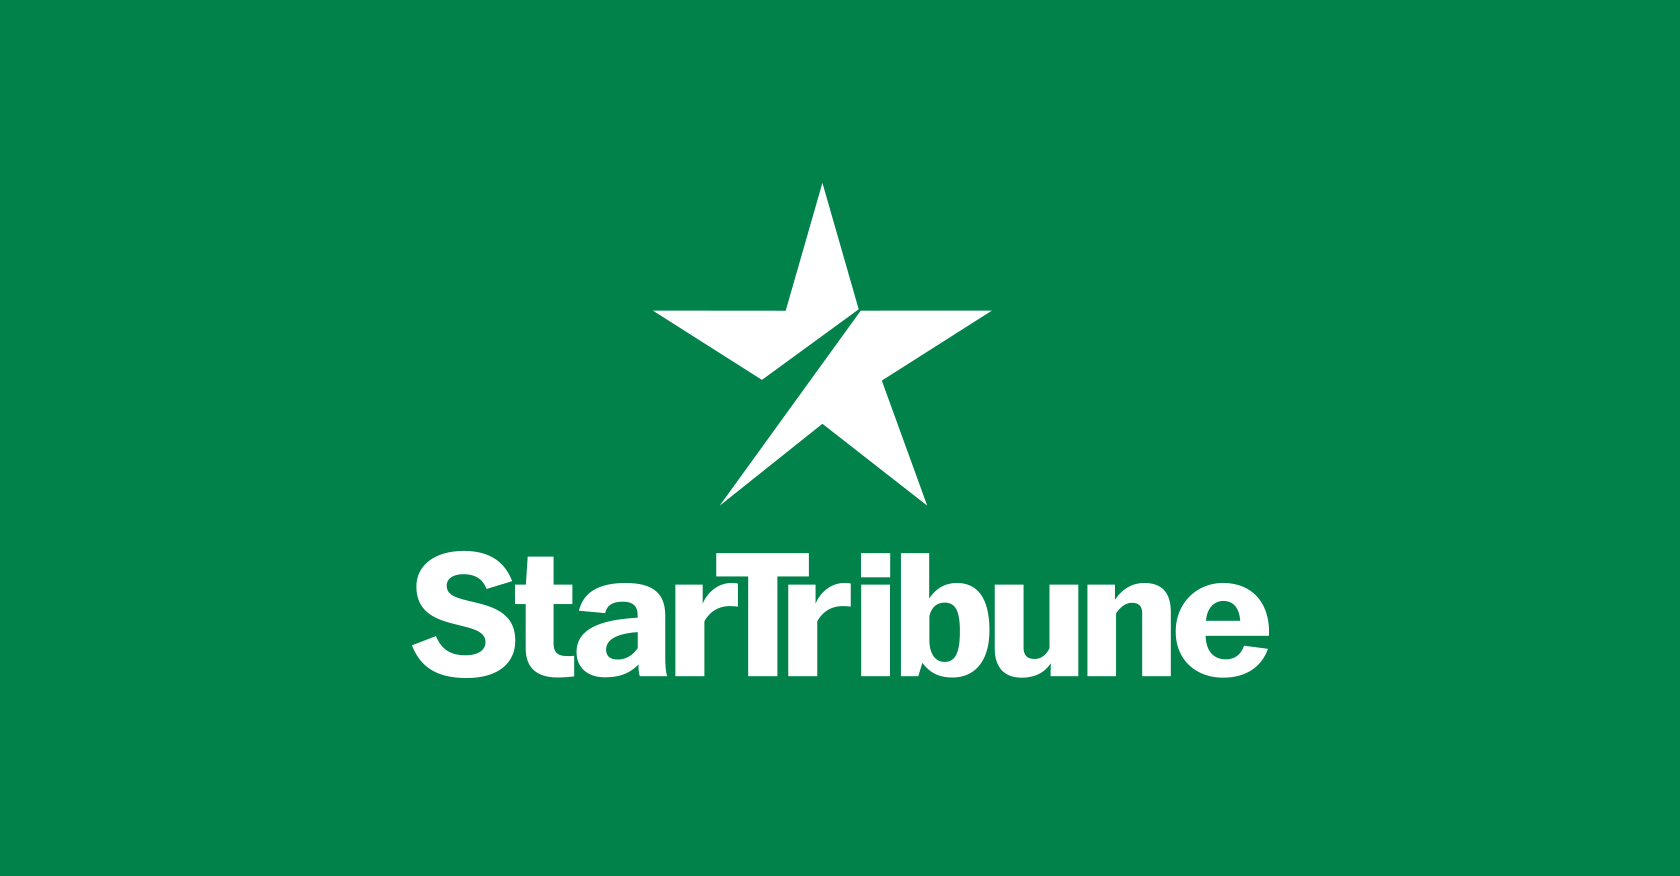 Metro briefs: Lakeville City Council weighs parks and rec referendum - Minneapolis Star Tribune